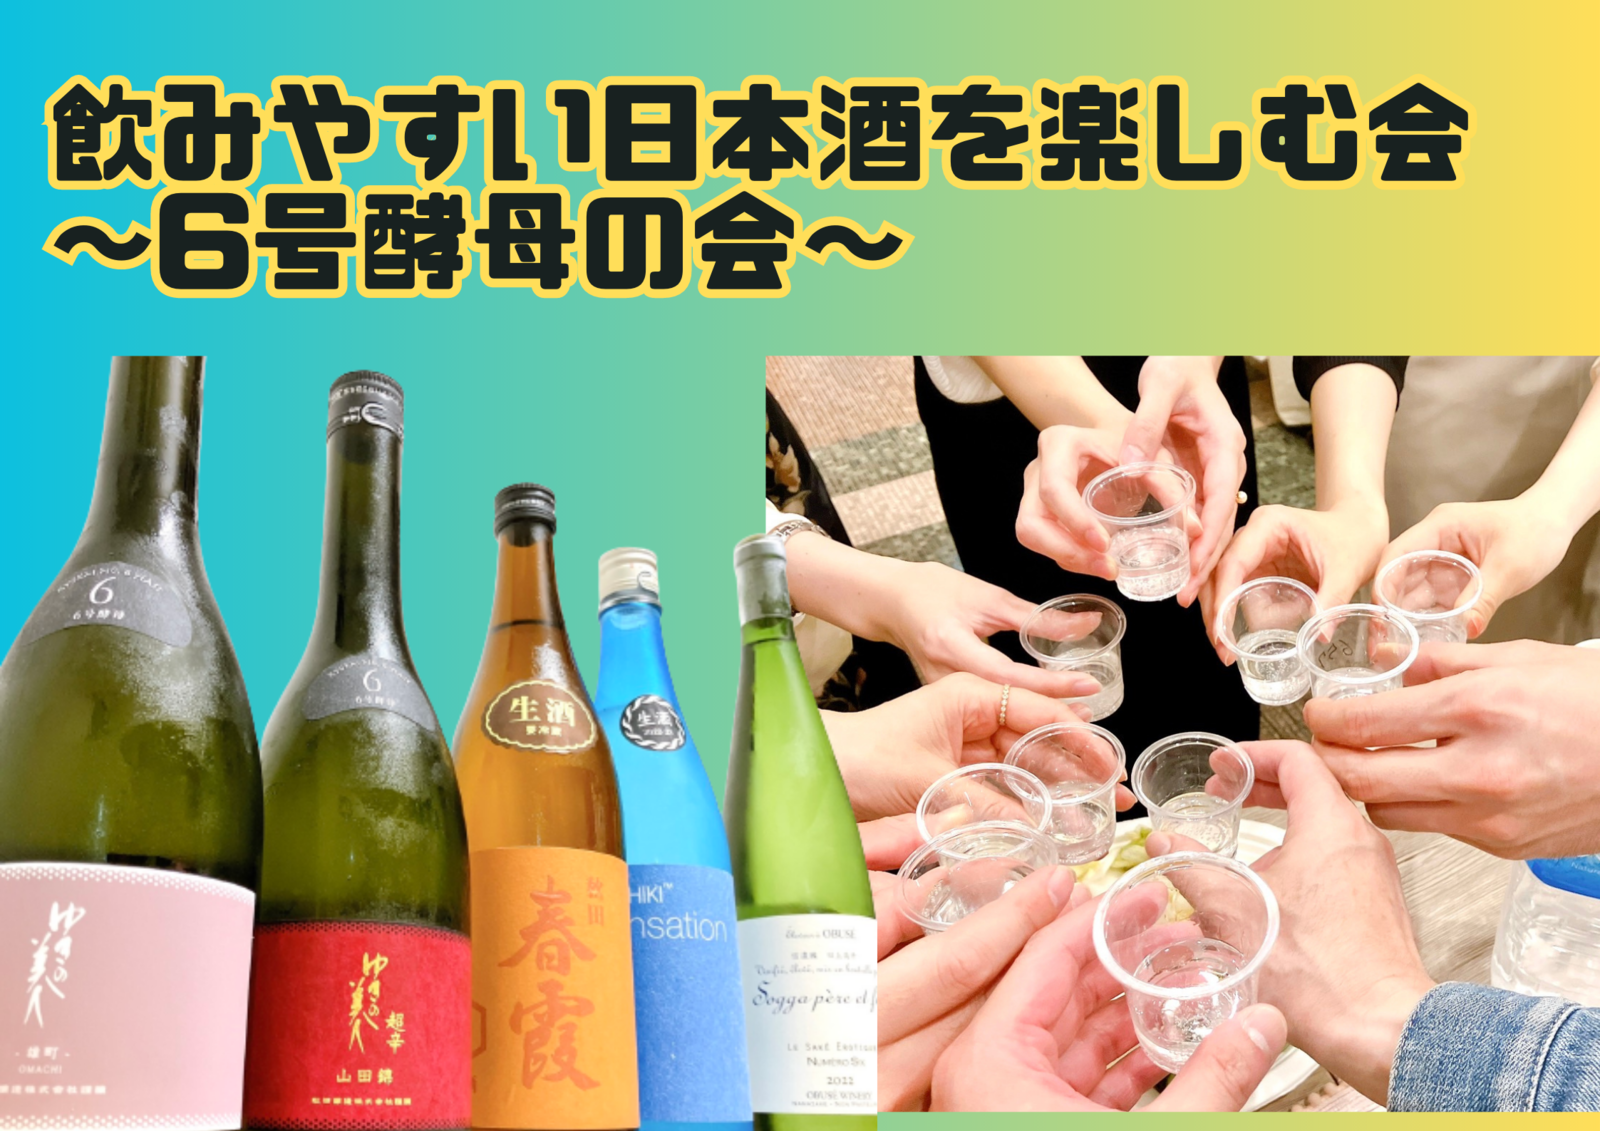 【現在10名】【20・30代同世代】飲みやすい日本酒を楽しむ会~6号酵母の会~